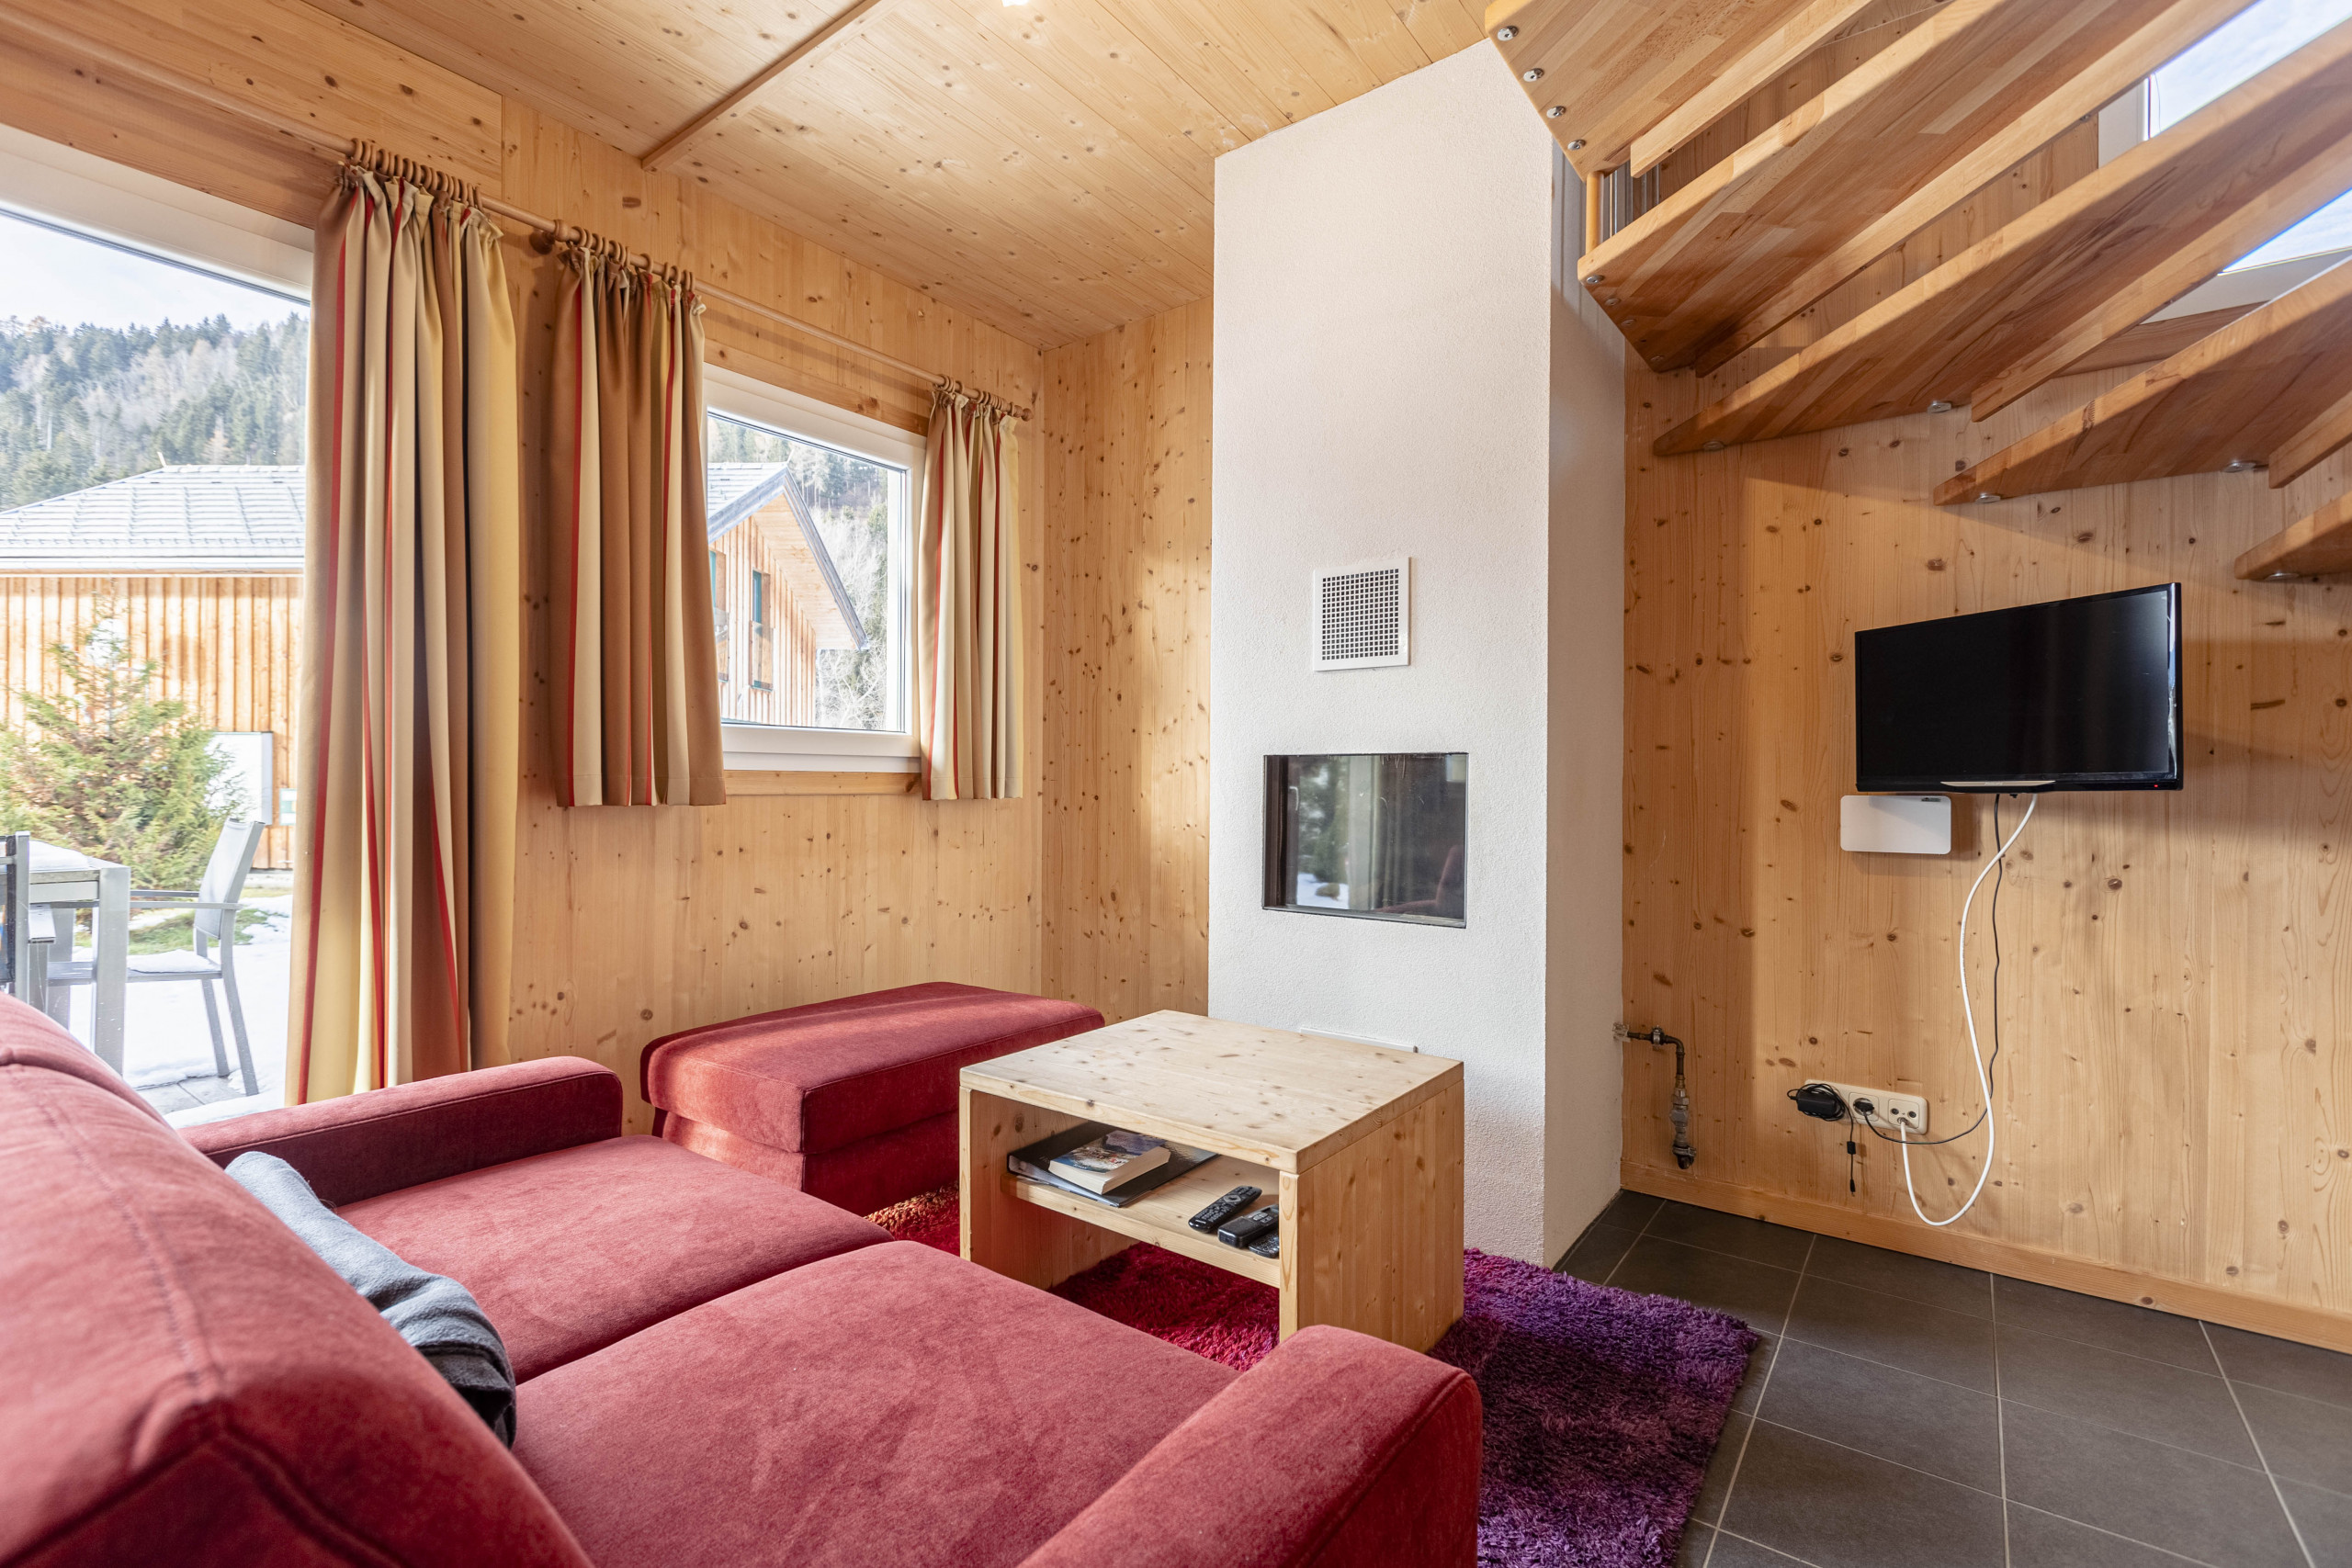  in Murau - Vakantiehuis # 21b met 3 slaapkamers & IR-sauna